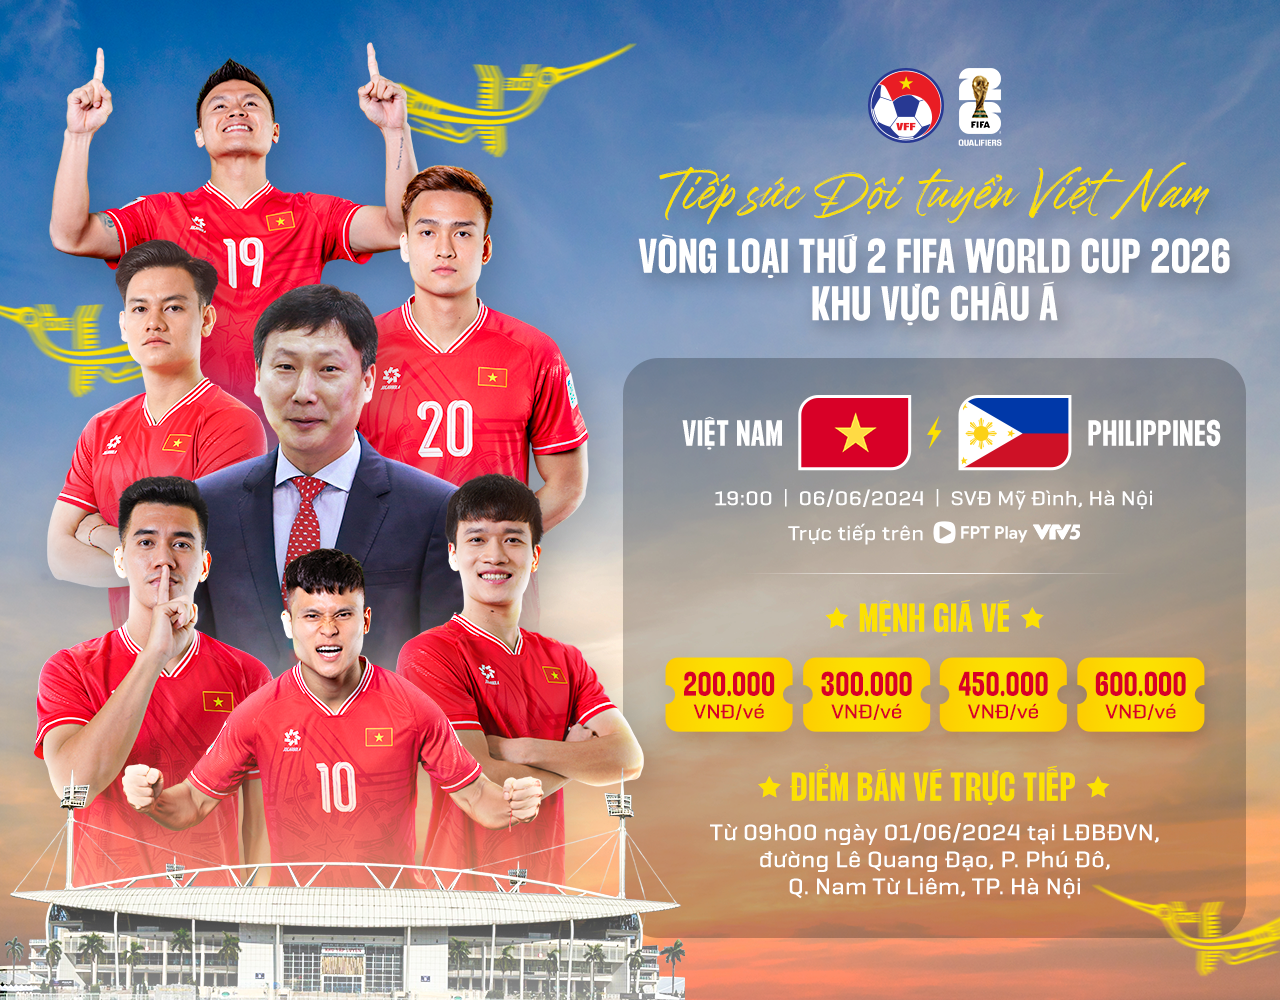 Vé xem trận Việt Nam - Philippines được mở bán trực tiếp từ ngày 1-6 - Ảnh: VFF